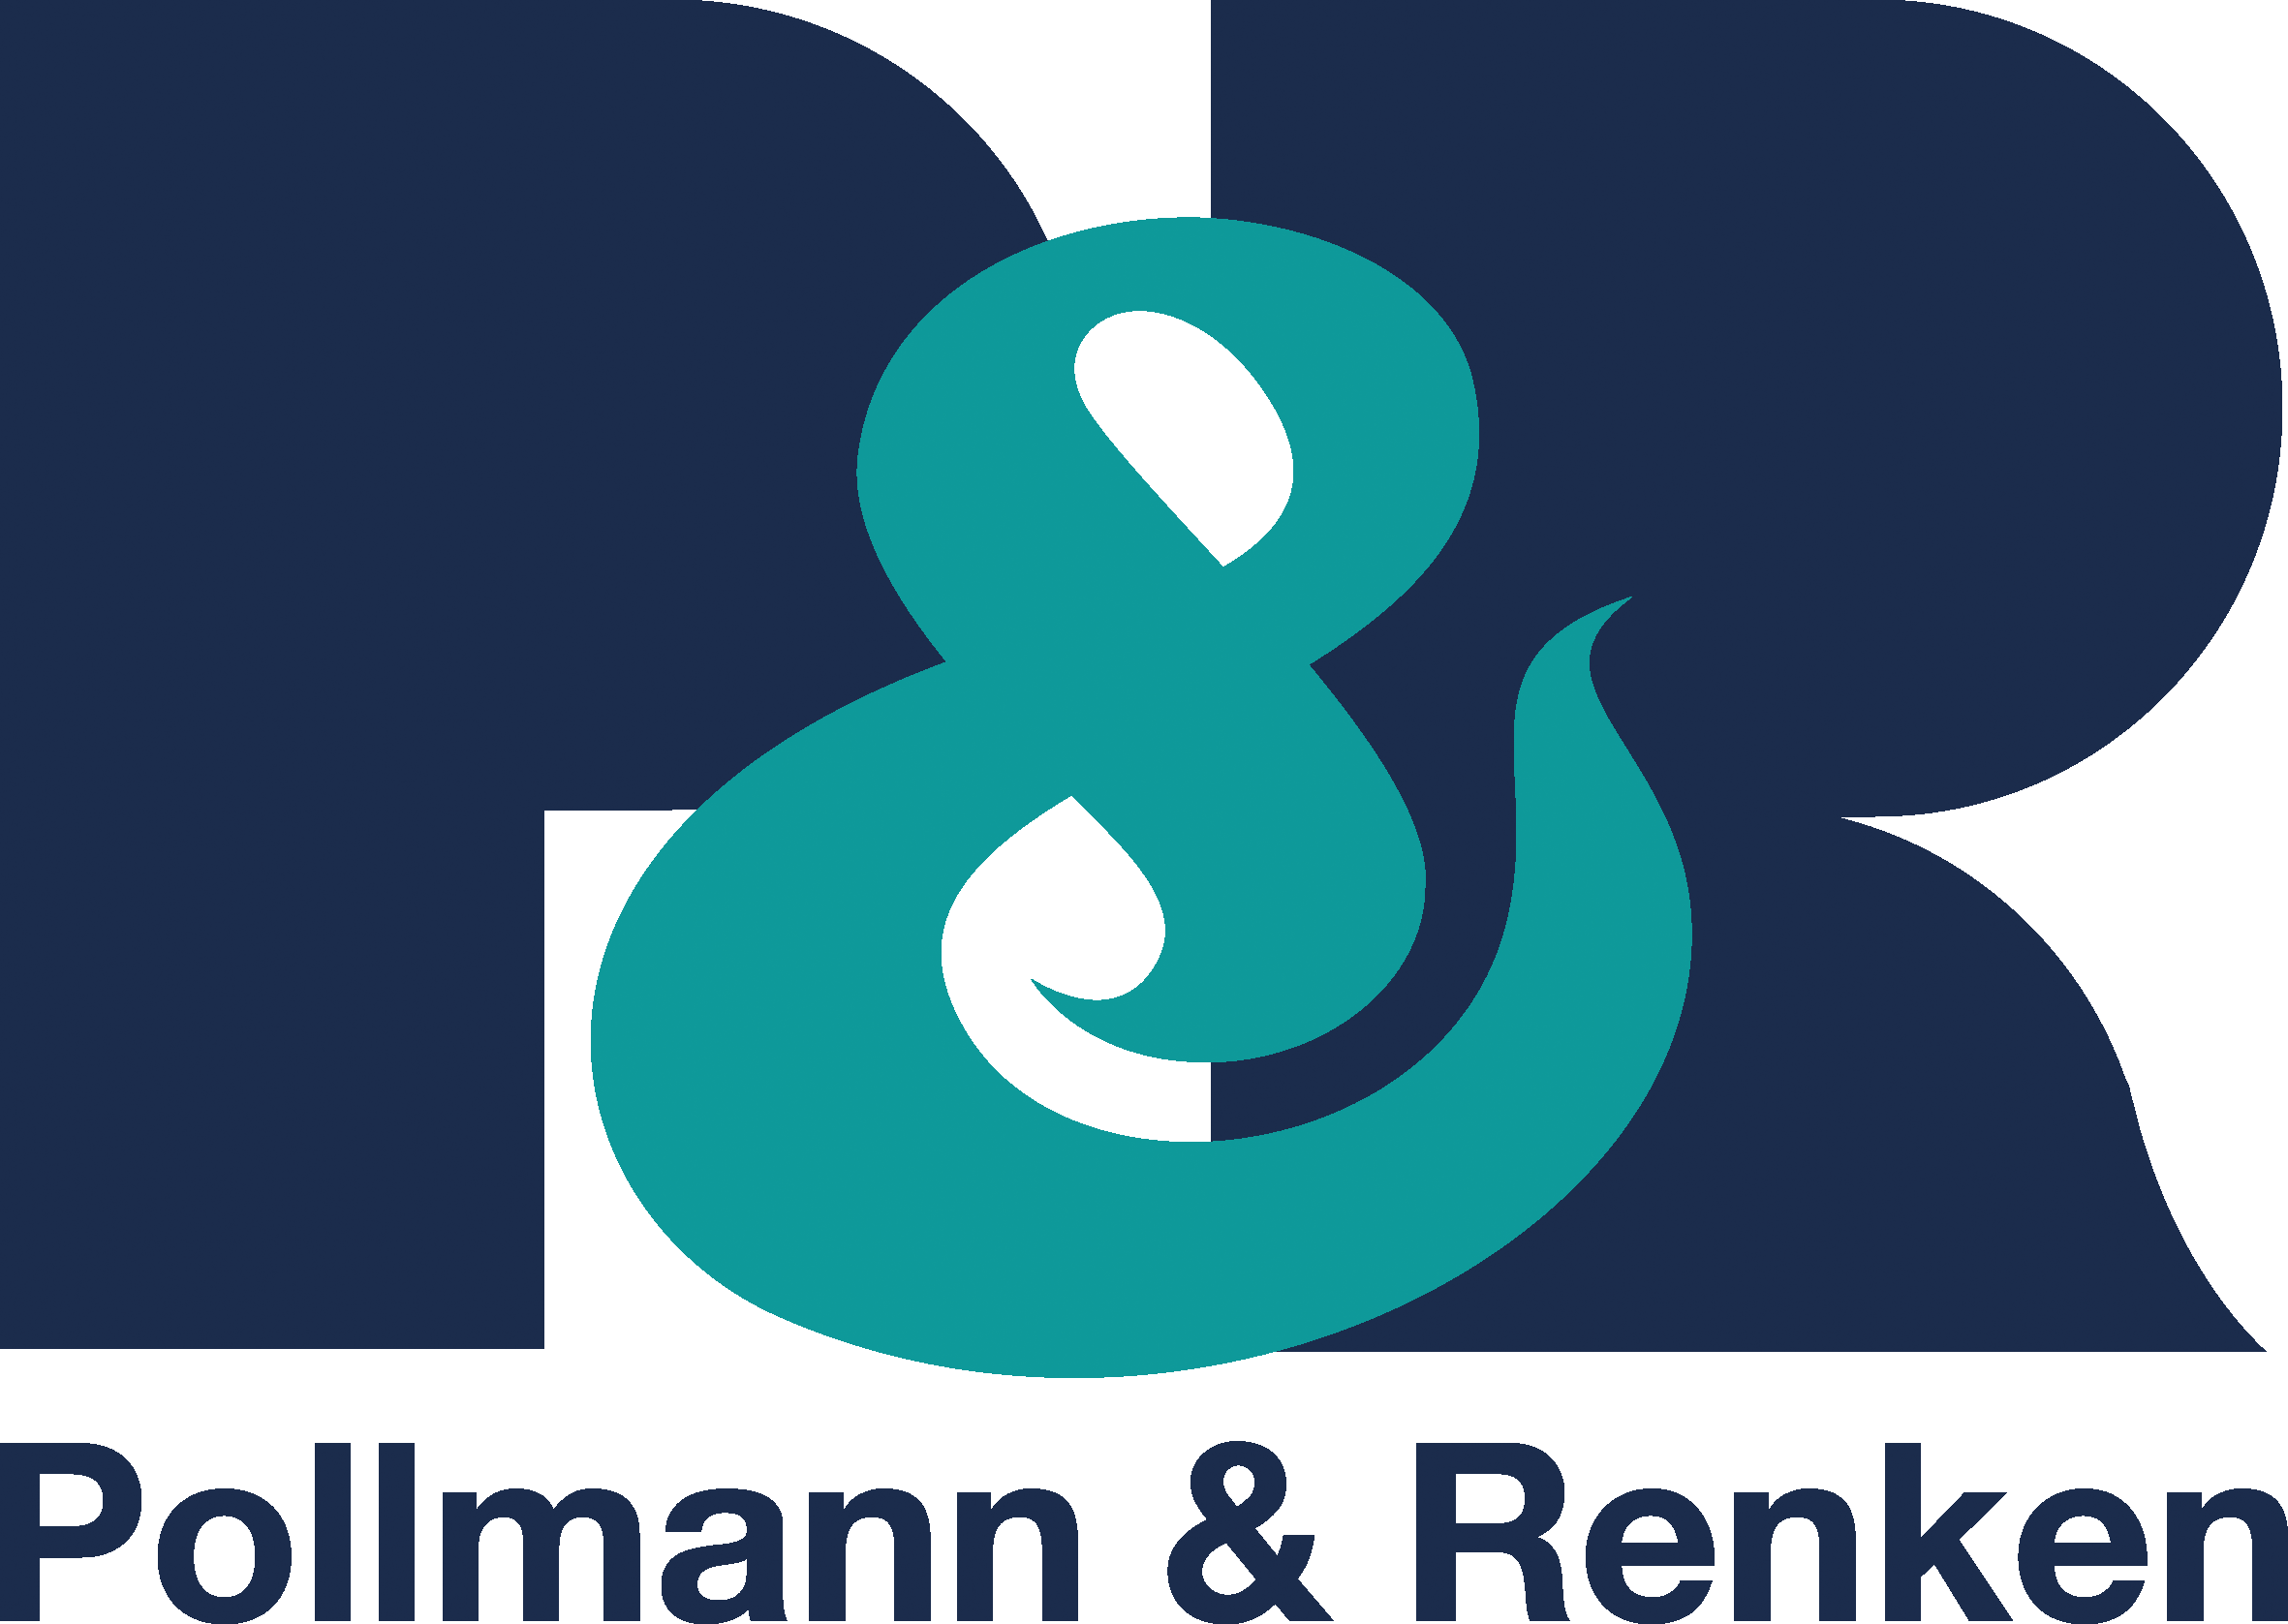 Pollmann & Renken